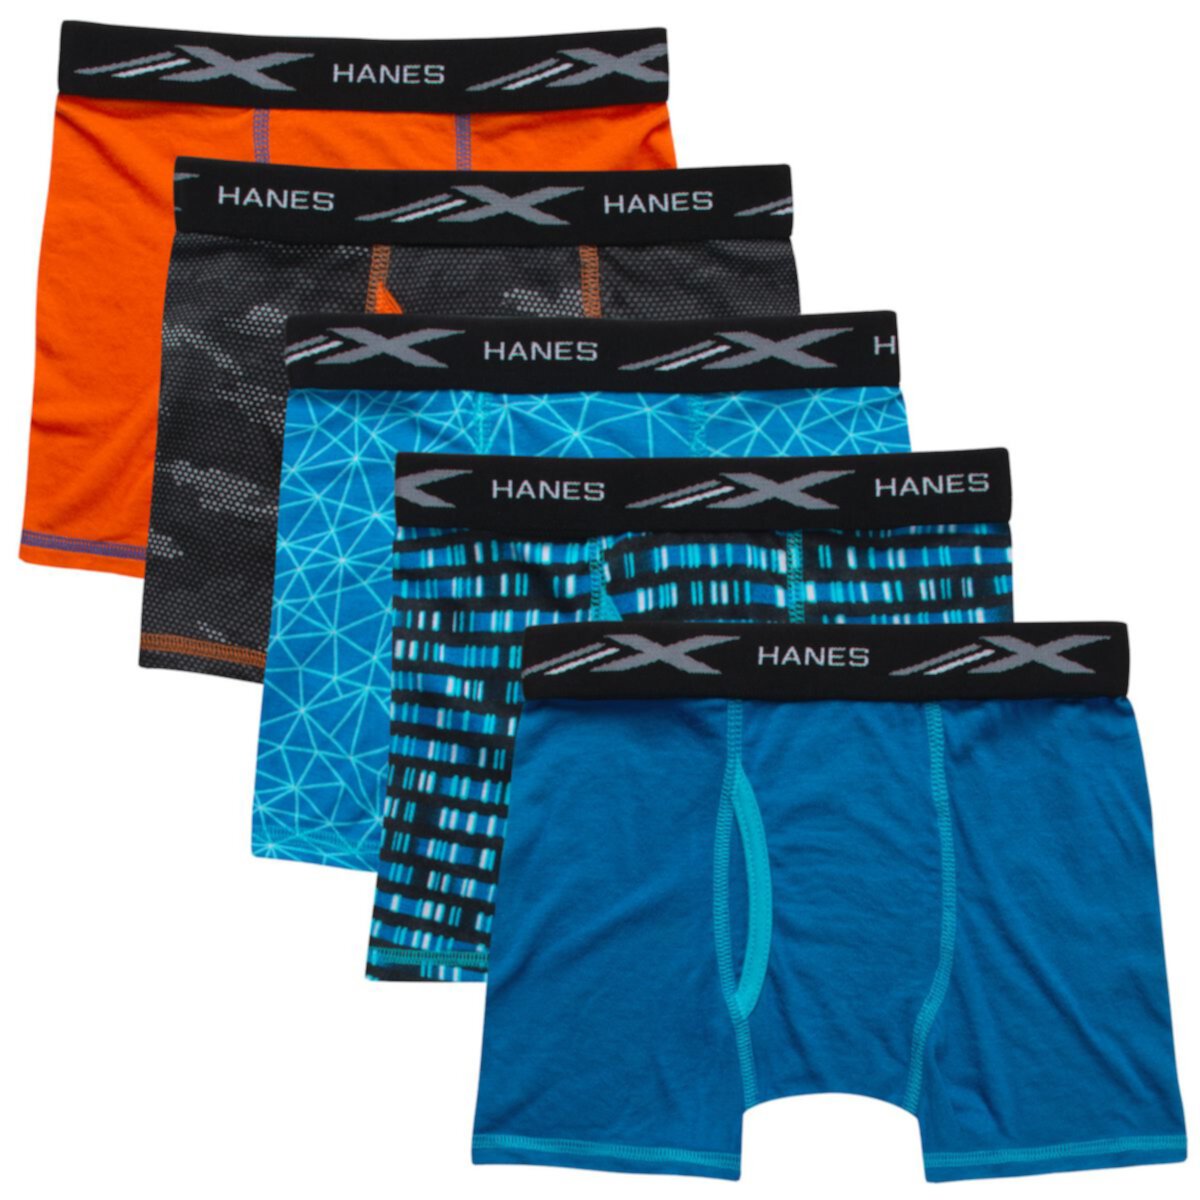 Мальчики 6-20 Hanes® Ultimate, комплект из 5 трусов-боксеров X-Temp, 5 шт. Hanes